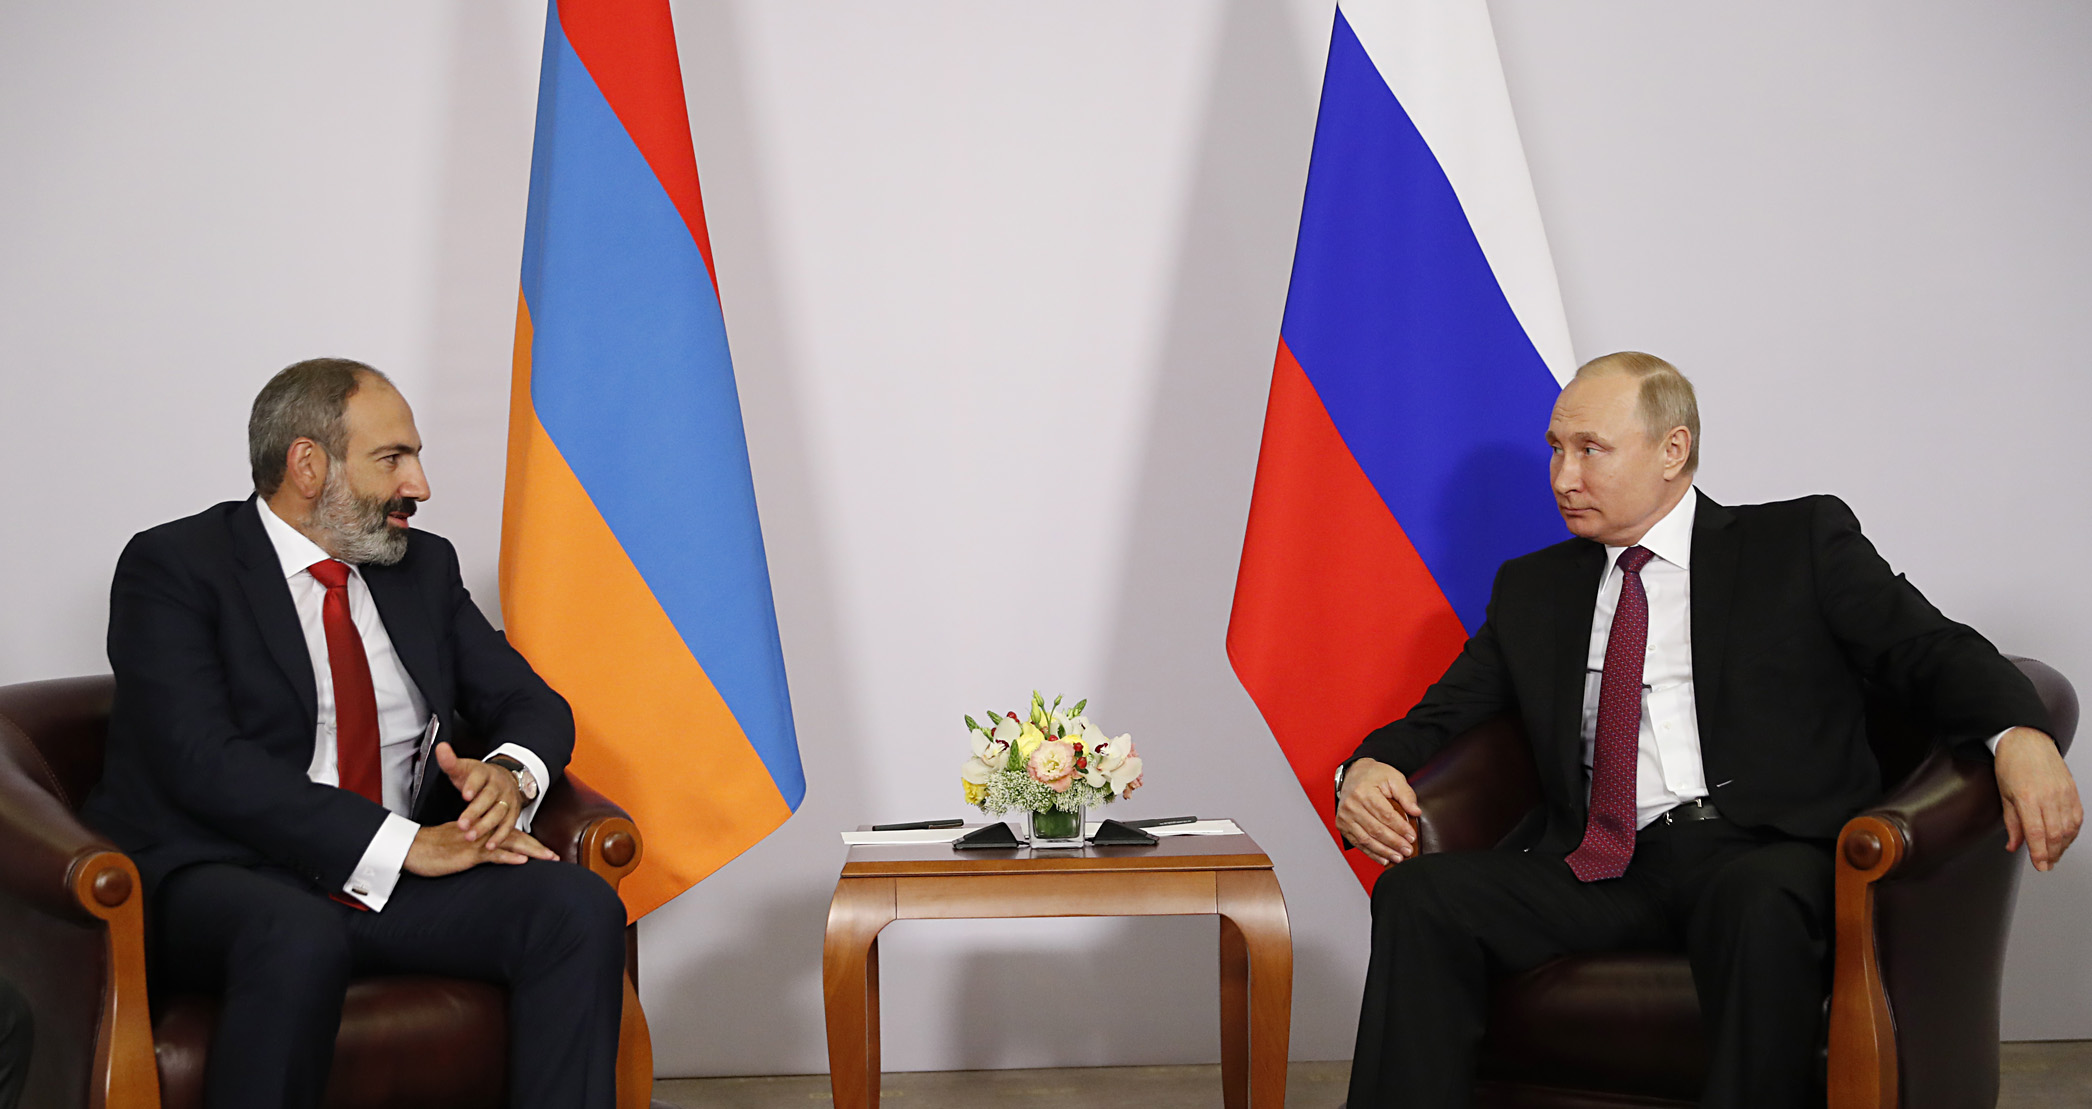 Փաշինյանը Պուտինի հետ հանդիպմանն ընդգծեց ՌԴ-ի հետ ռազմավարական հարաբերությունների կարևորությունը